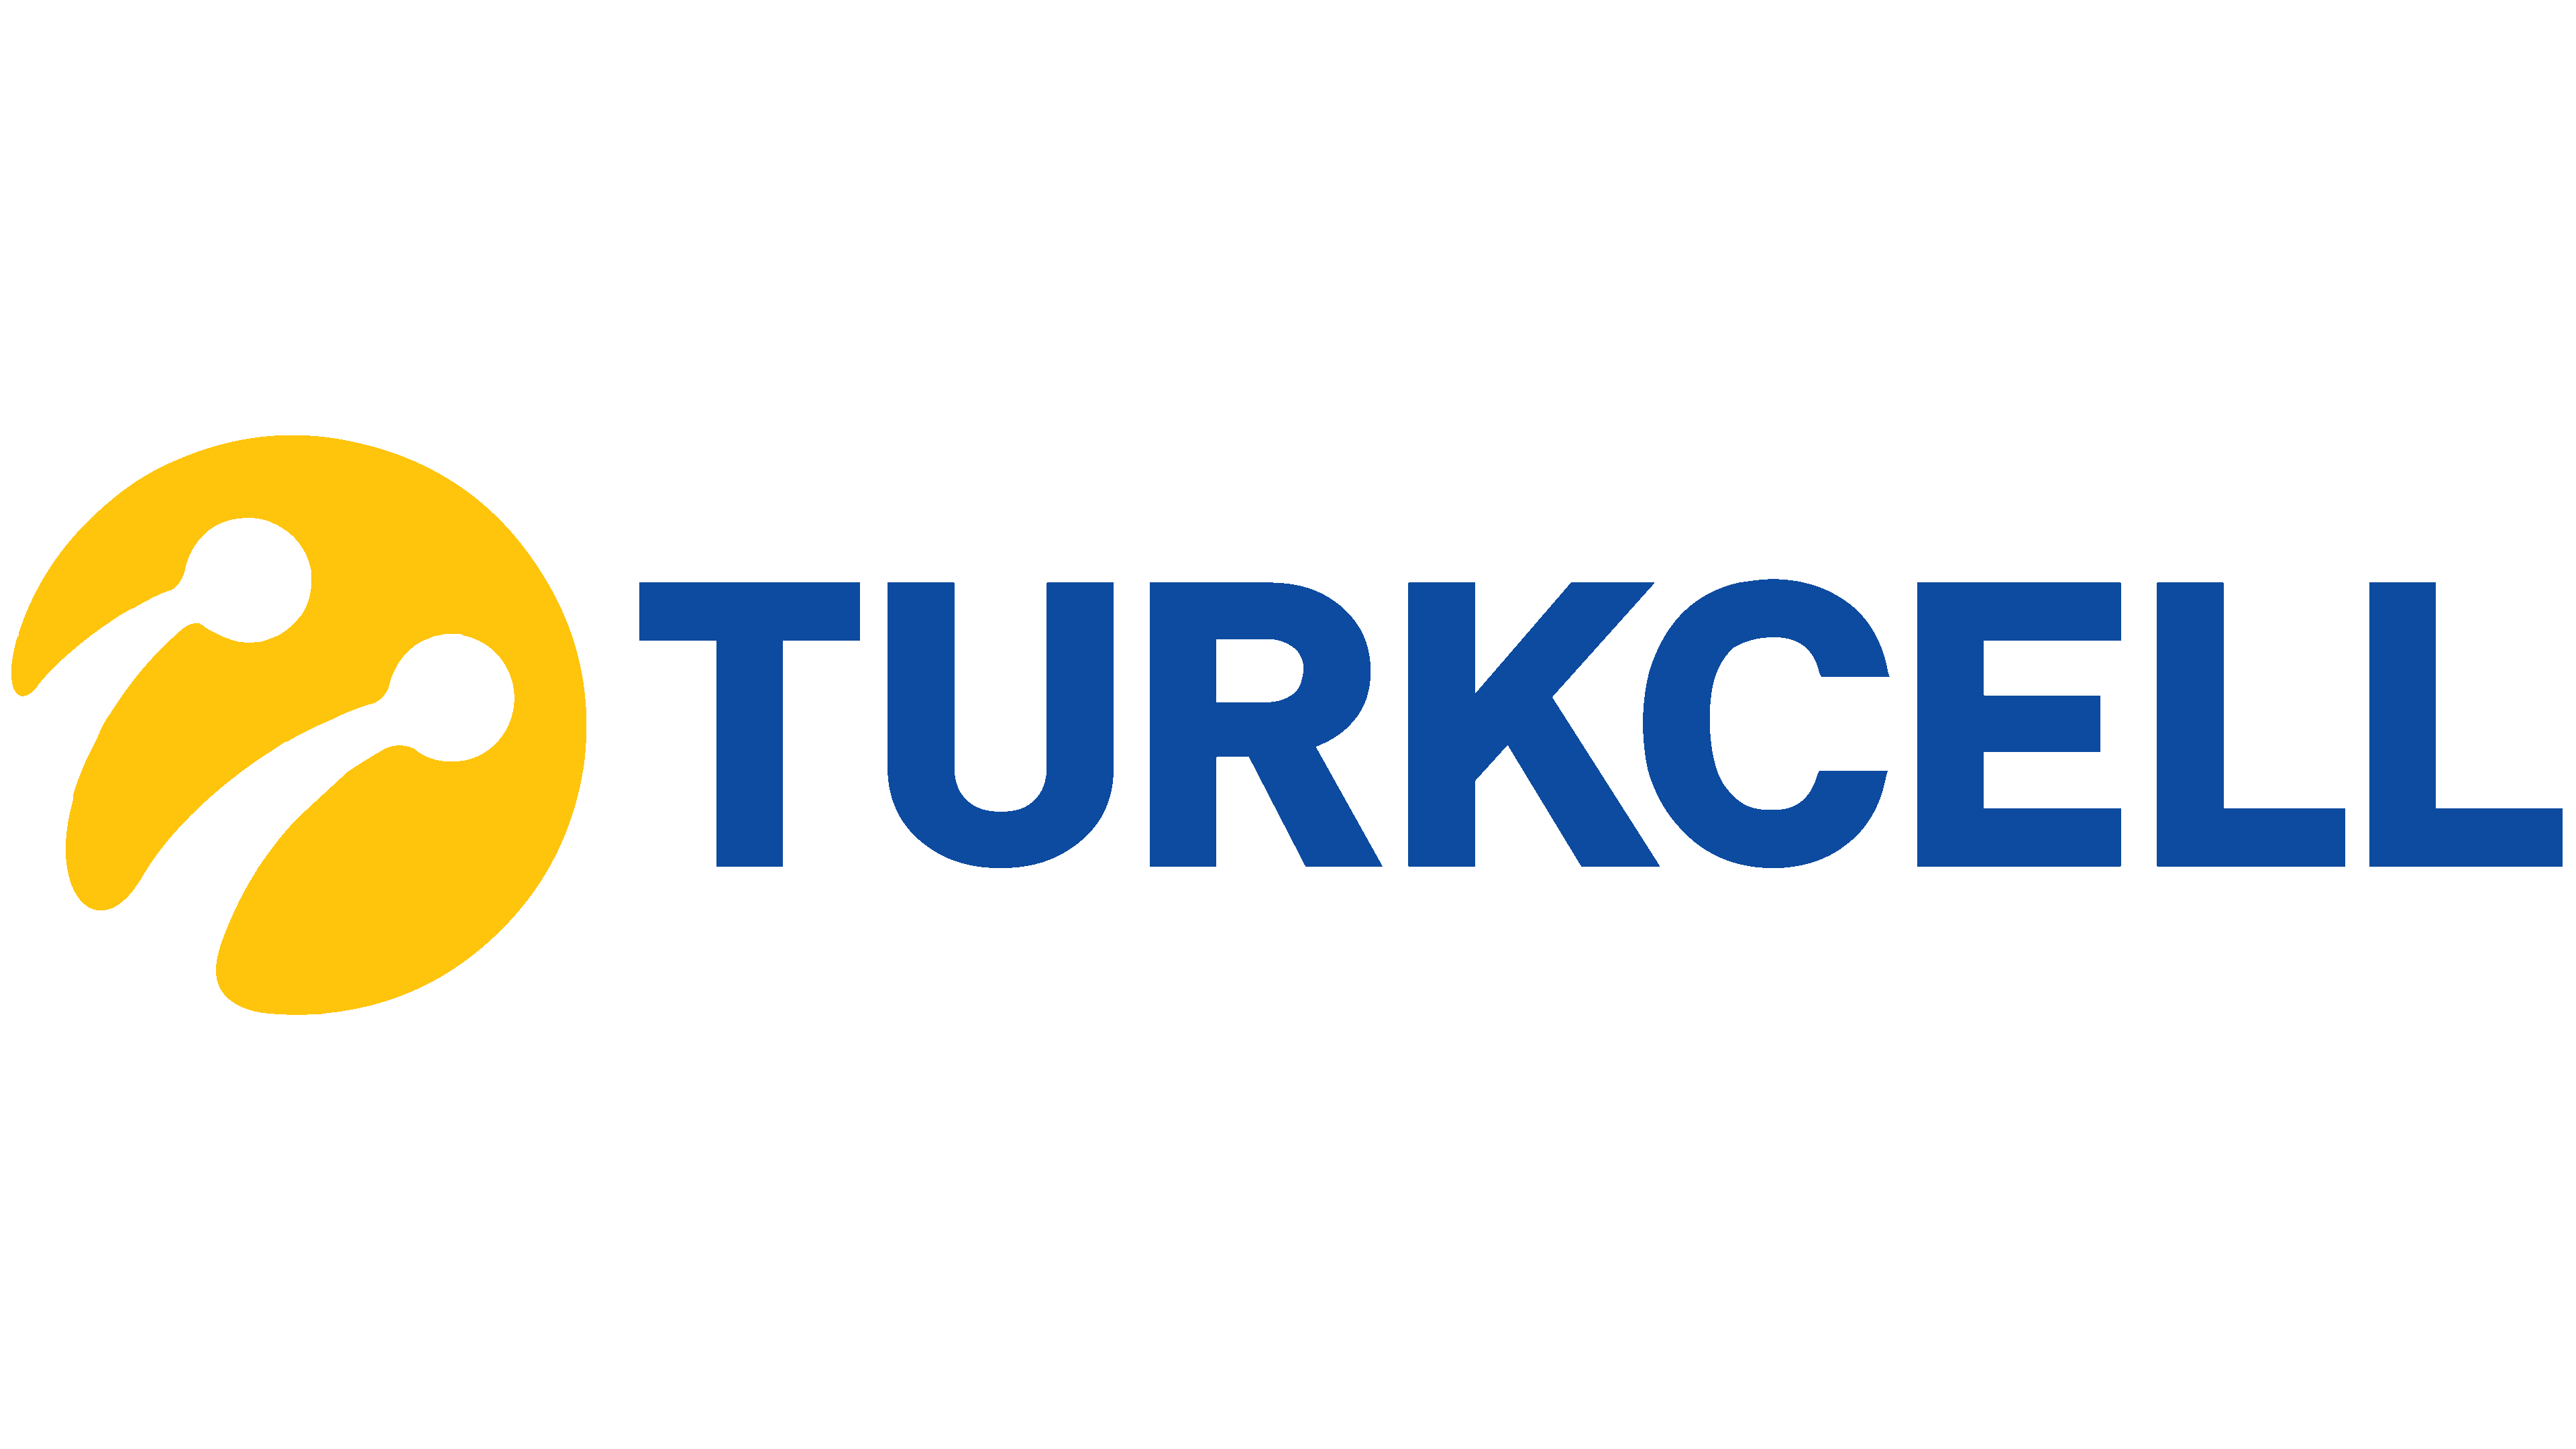 Turkcell Brand Logo